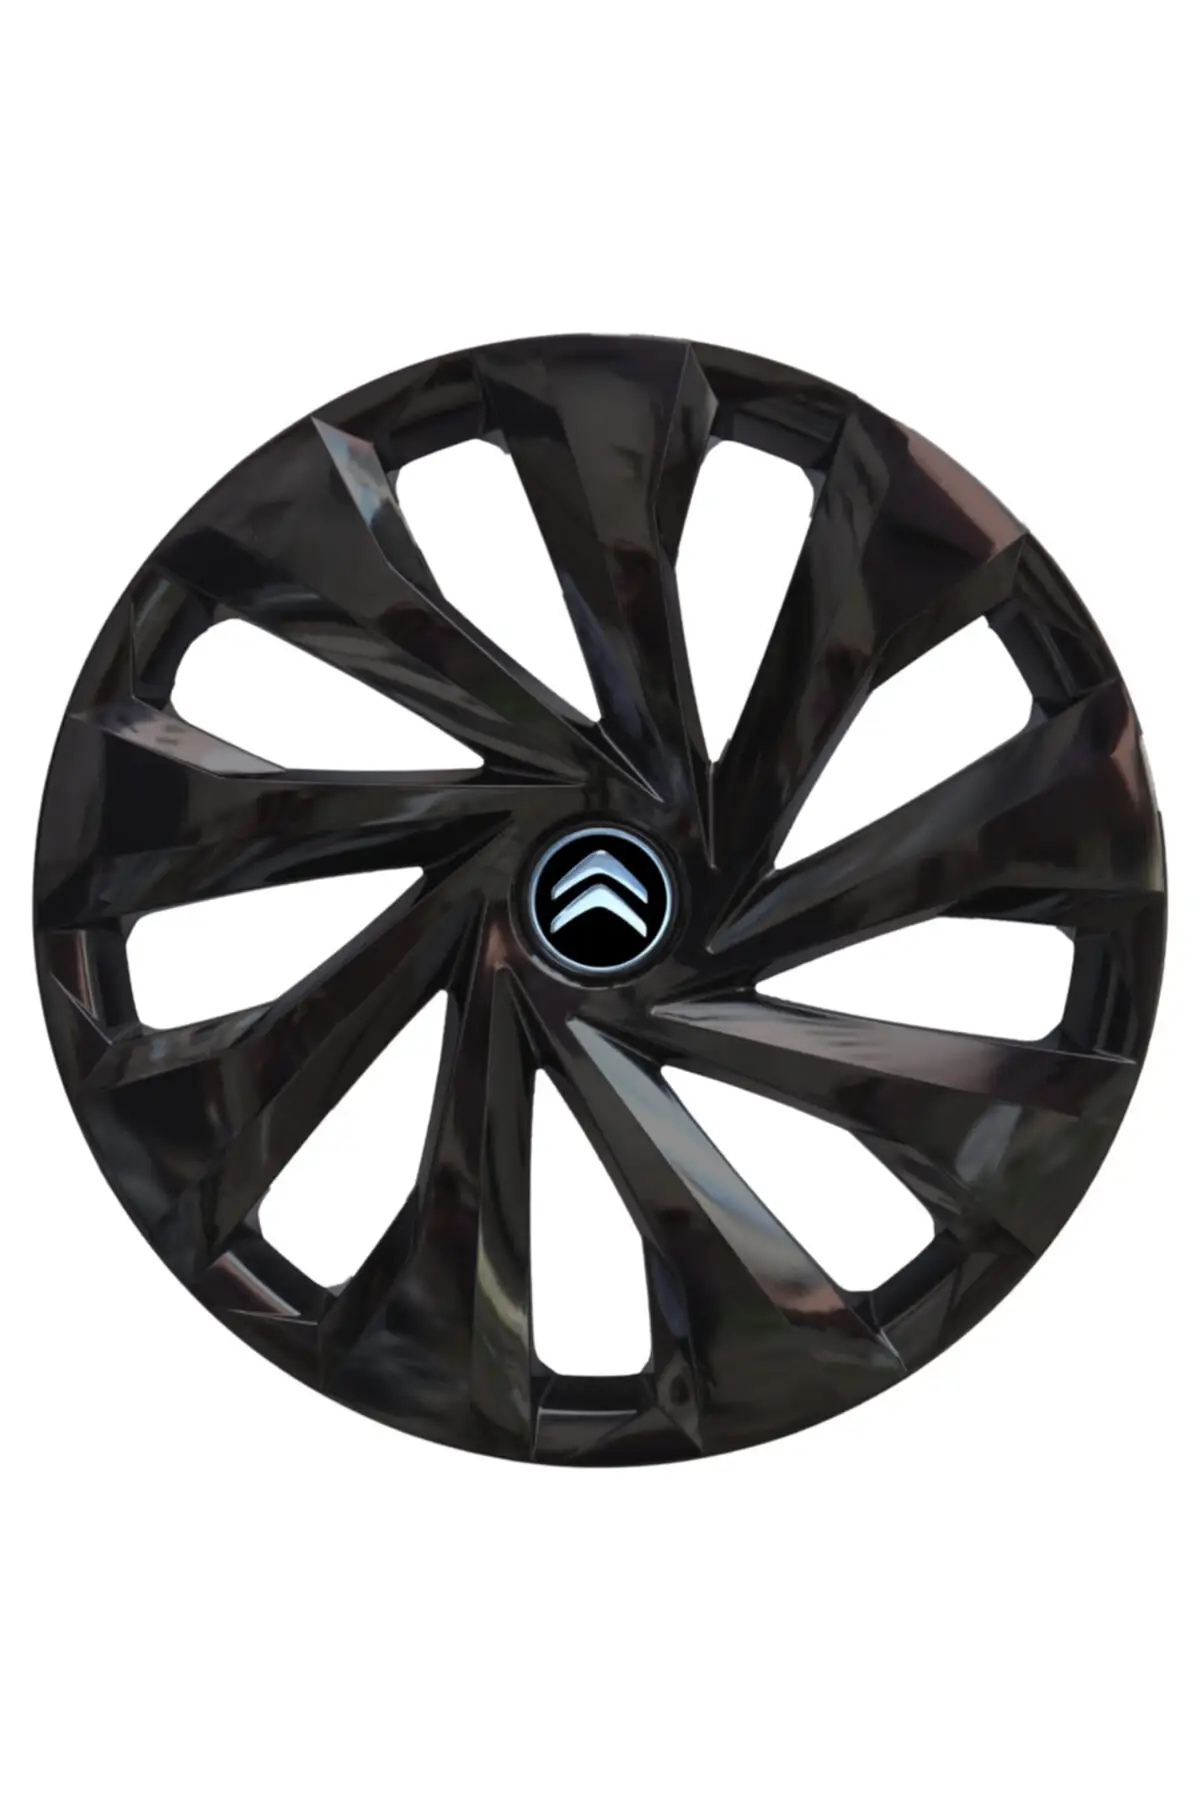 Citroen C1 14 ''inches Compatible Wheel Cover Set 1 1013 4 pcs KDR3007